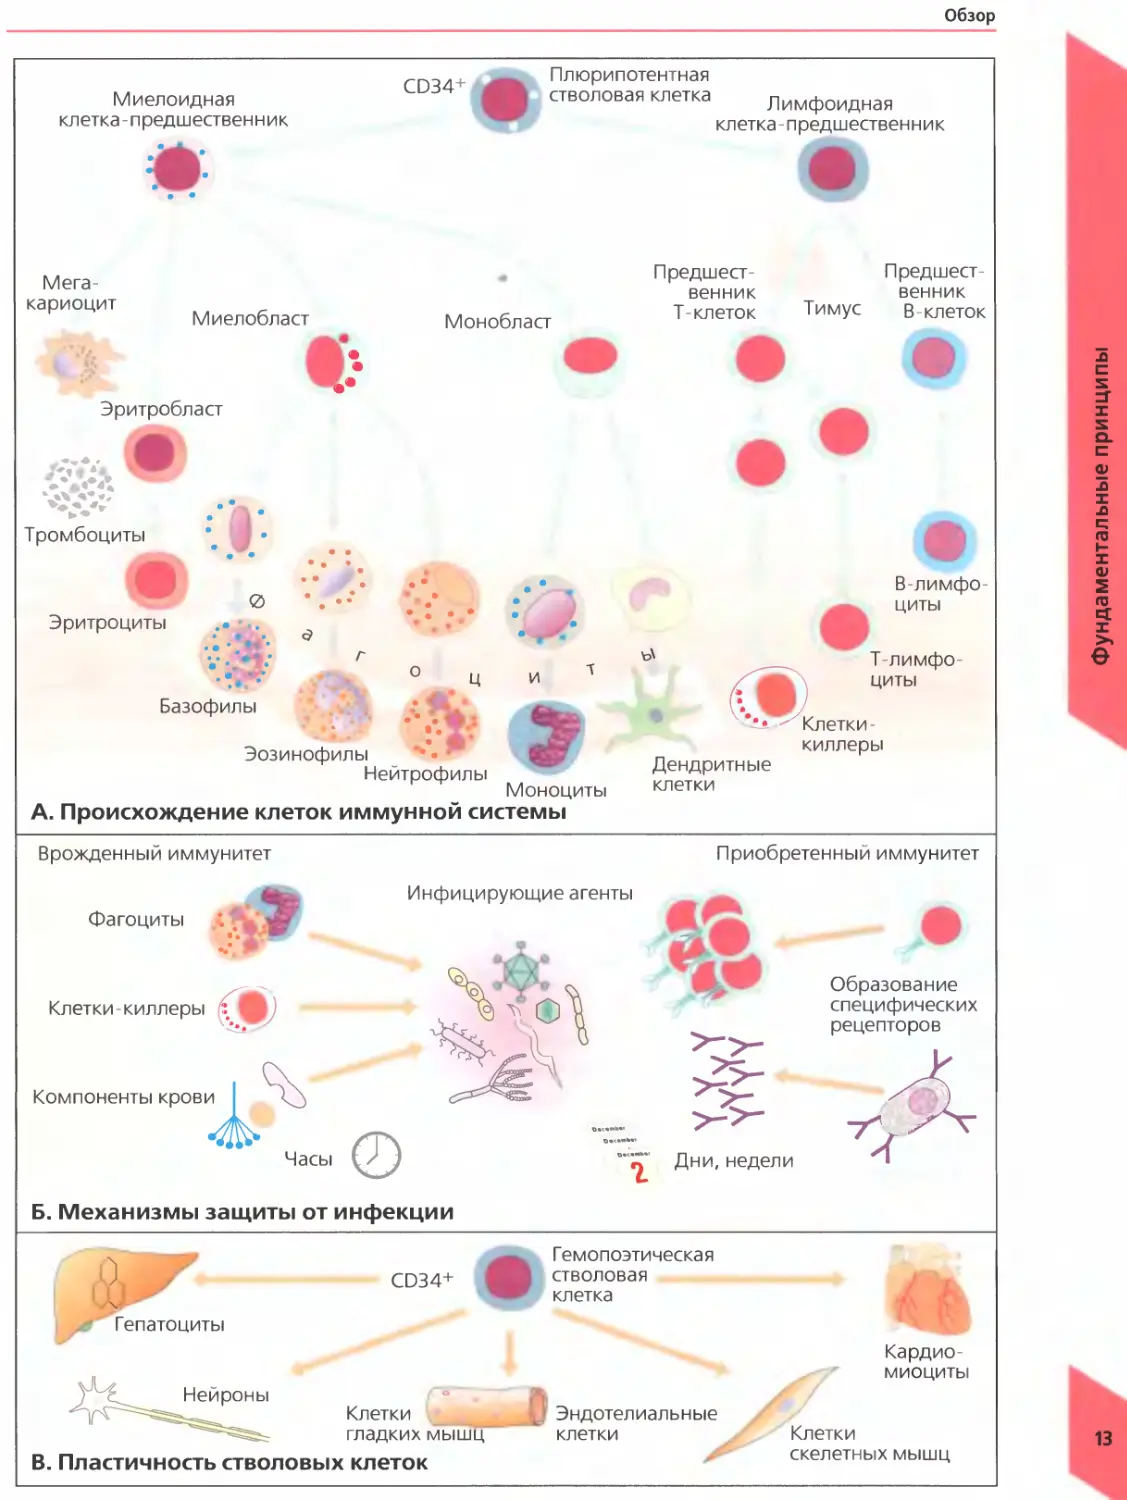 Основные иммунные клетки. Клетки иммунной системы перечень. Иммунная система человека клетки иммунной системы. Схема дифференцировки клеток иммунной системы. Плюрипотентные гемопоэтические стволовые клетки.